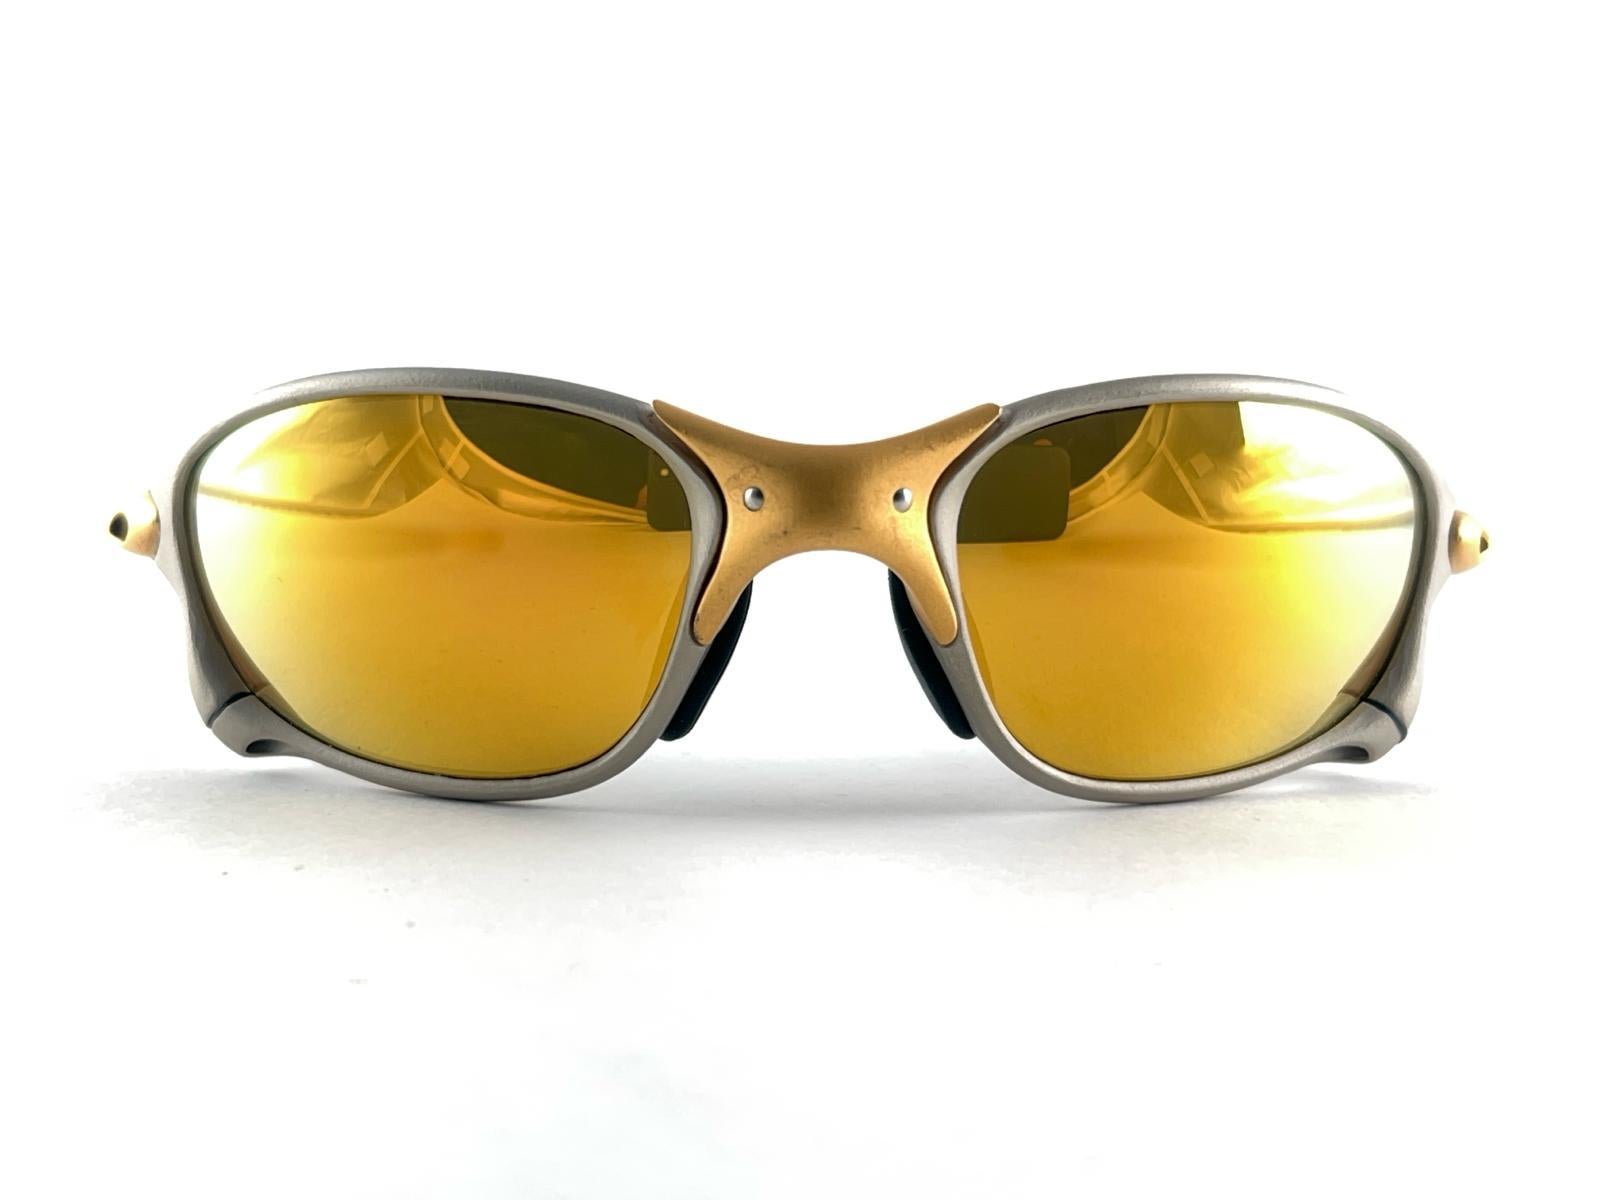 
Neu &New  seltene Vintage Oakley XX Sonnenbrille. 
Wickel-Sportbrille mit 24 K Gold-Iridium-Gläsern.
Neu, nie getragen oder ausgestellt. Dieser Artikel kann aufgrund der Lagerung leichte Gebrauchsspuren aufweisen.
Kommt mit seiner ursprünglichen